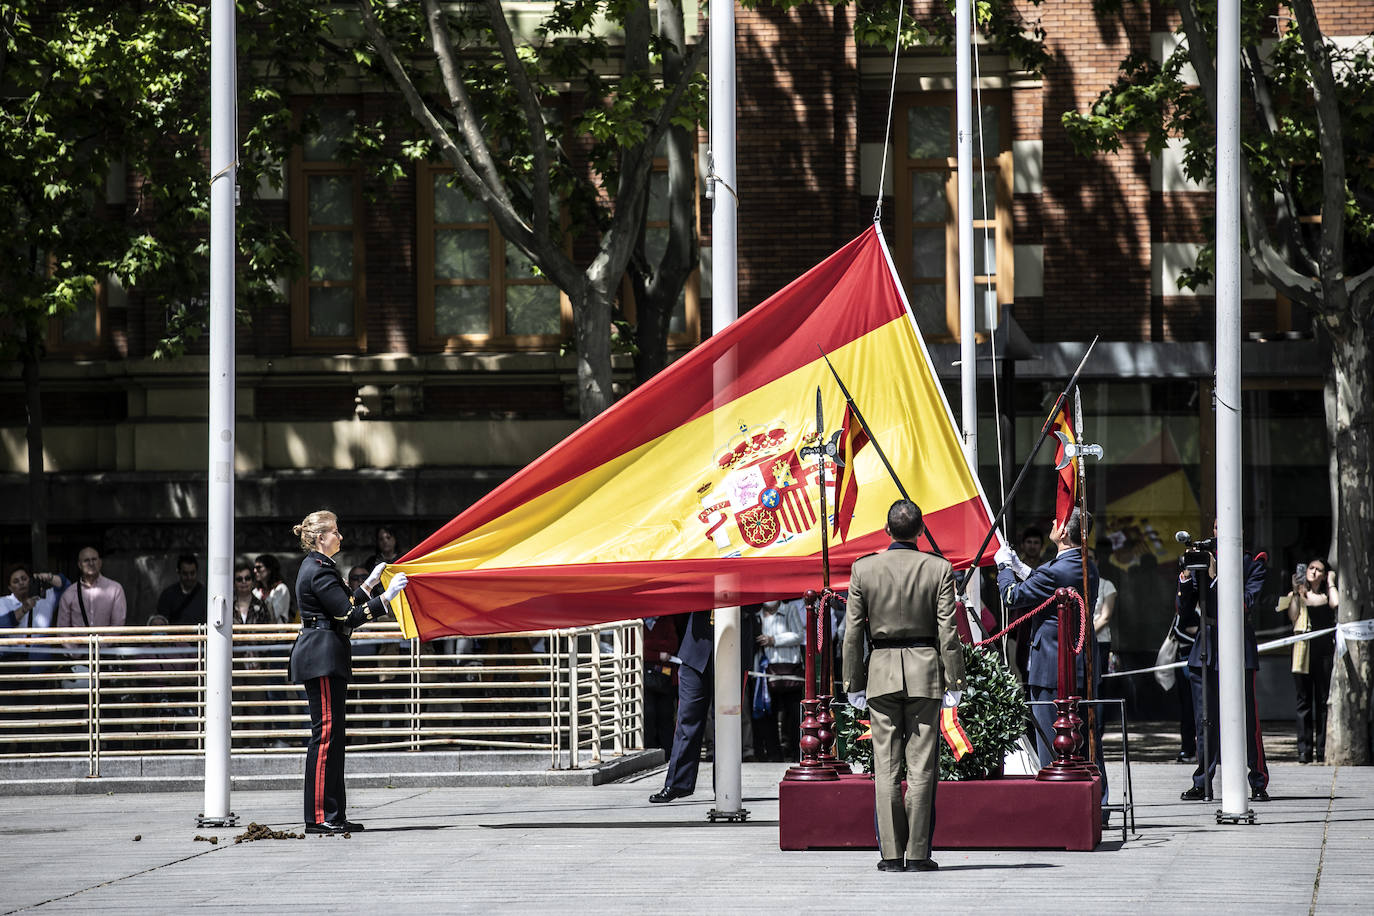 Fotos: 370 personas juran bandera en Logroño